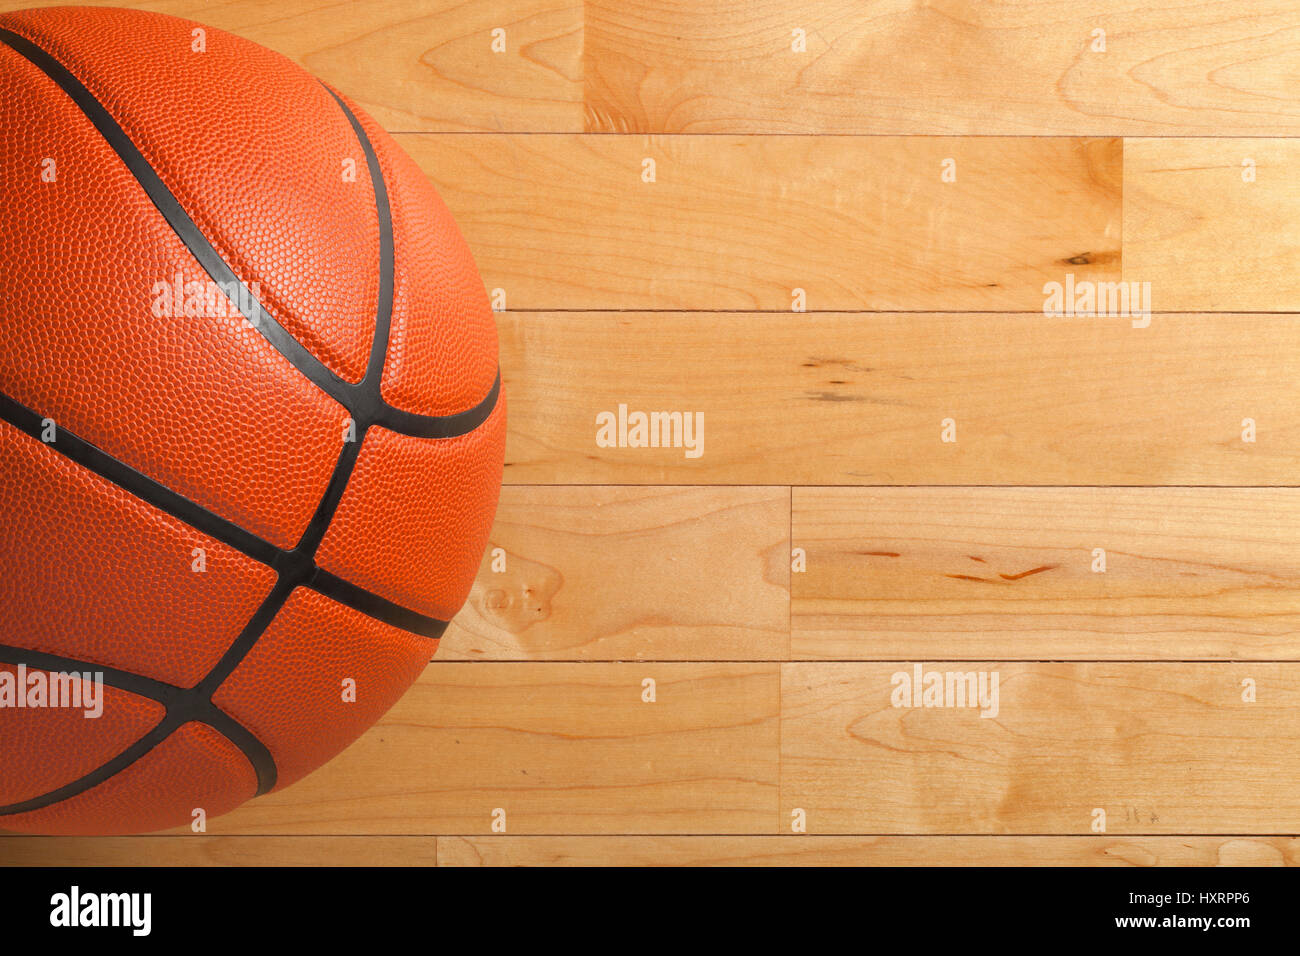 Un terrain de basket-ball sur un bois plancher du gymnase Vue de dessus Banque D'Images